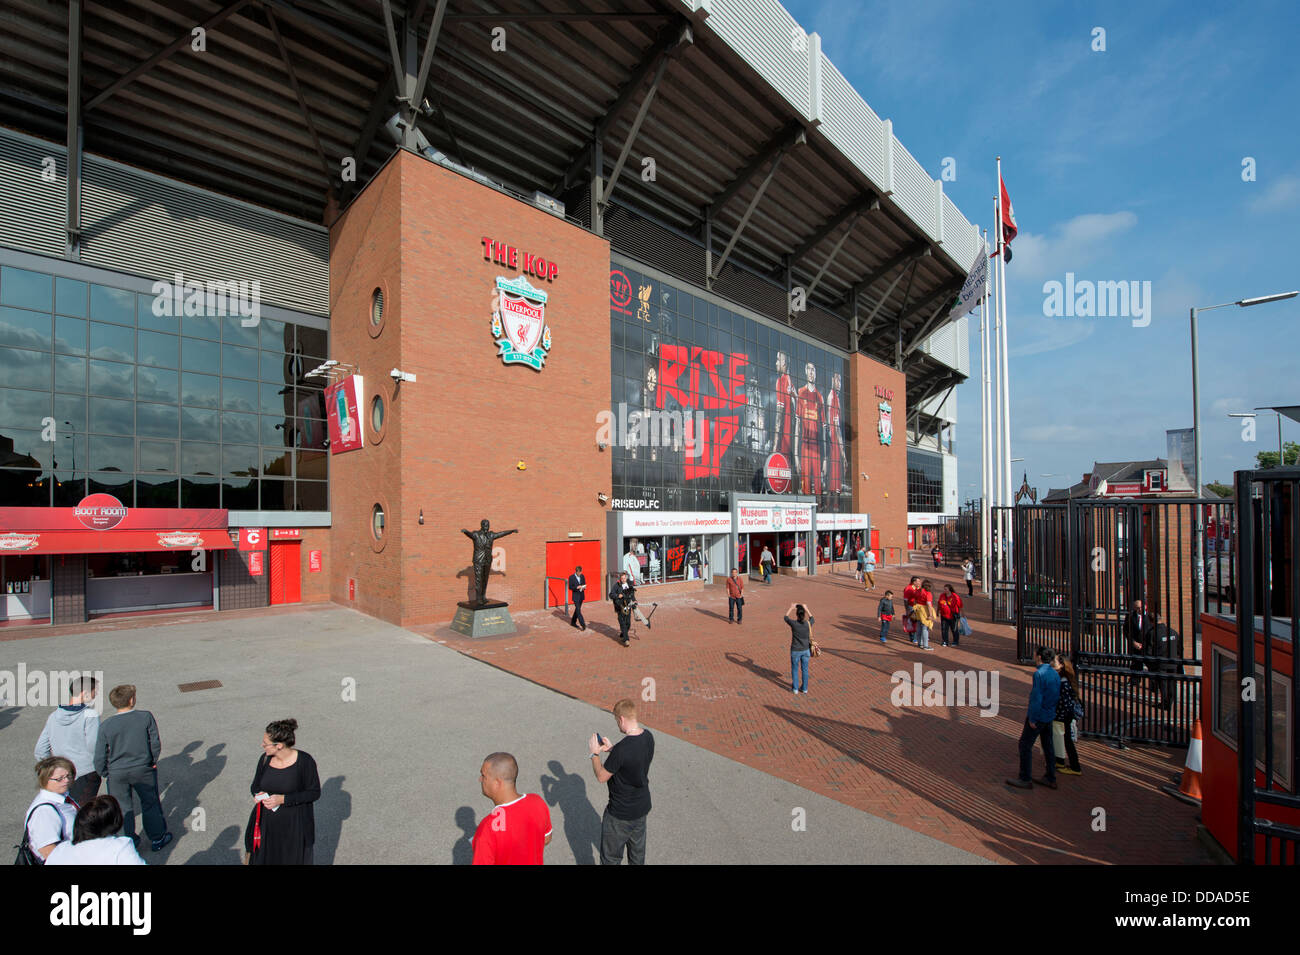 Eine Weitwinkeleinstellung von Spion Kop Ende des Anfield-Stadion, Heimat des Liverpool Football Club (nur zur redaktionellen Verwendung). Stockfoto